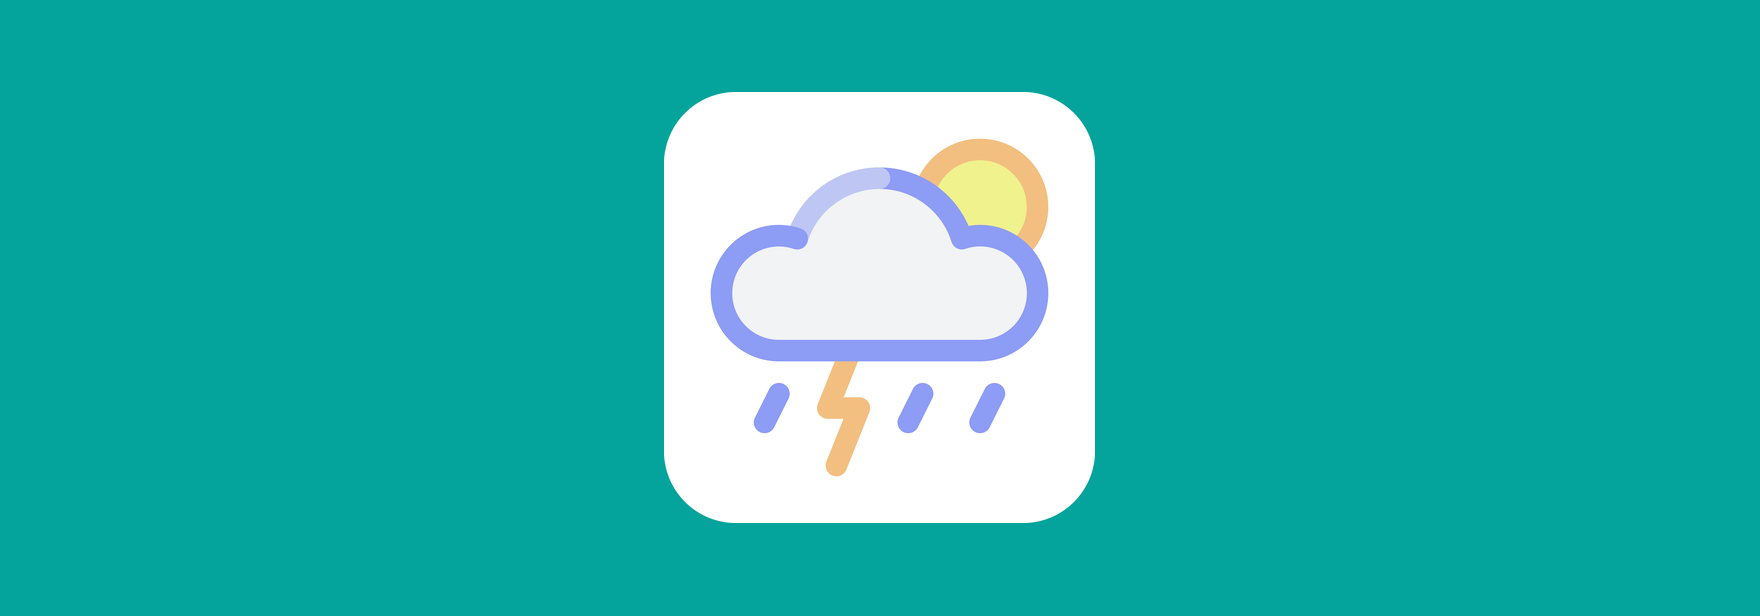 Приложение для поиска погоды с Vue 3 + OpenWeatherMap API